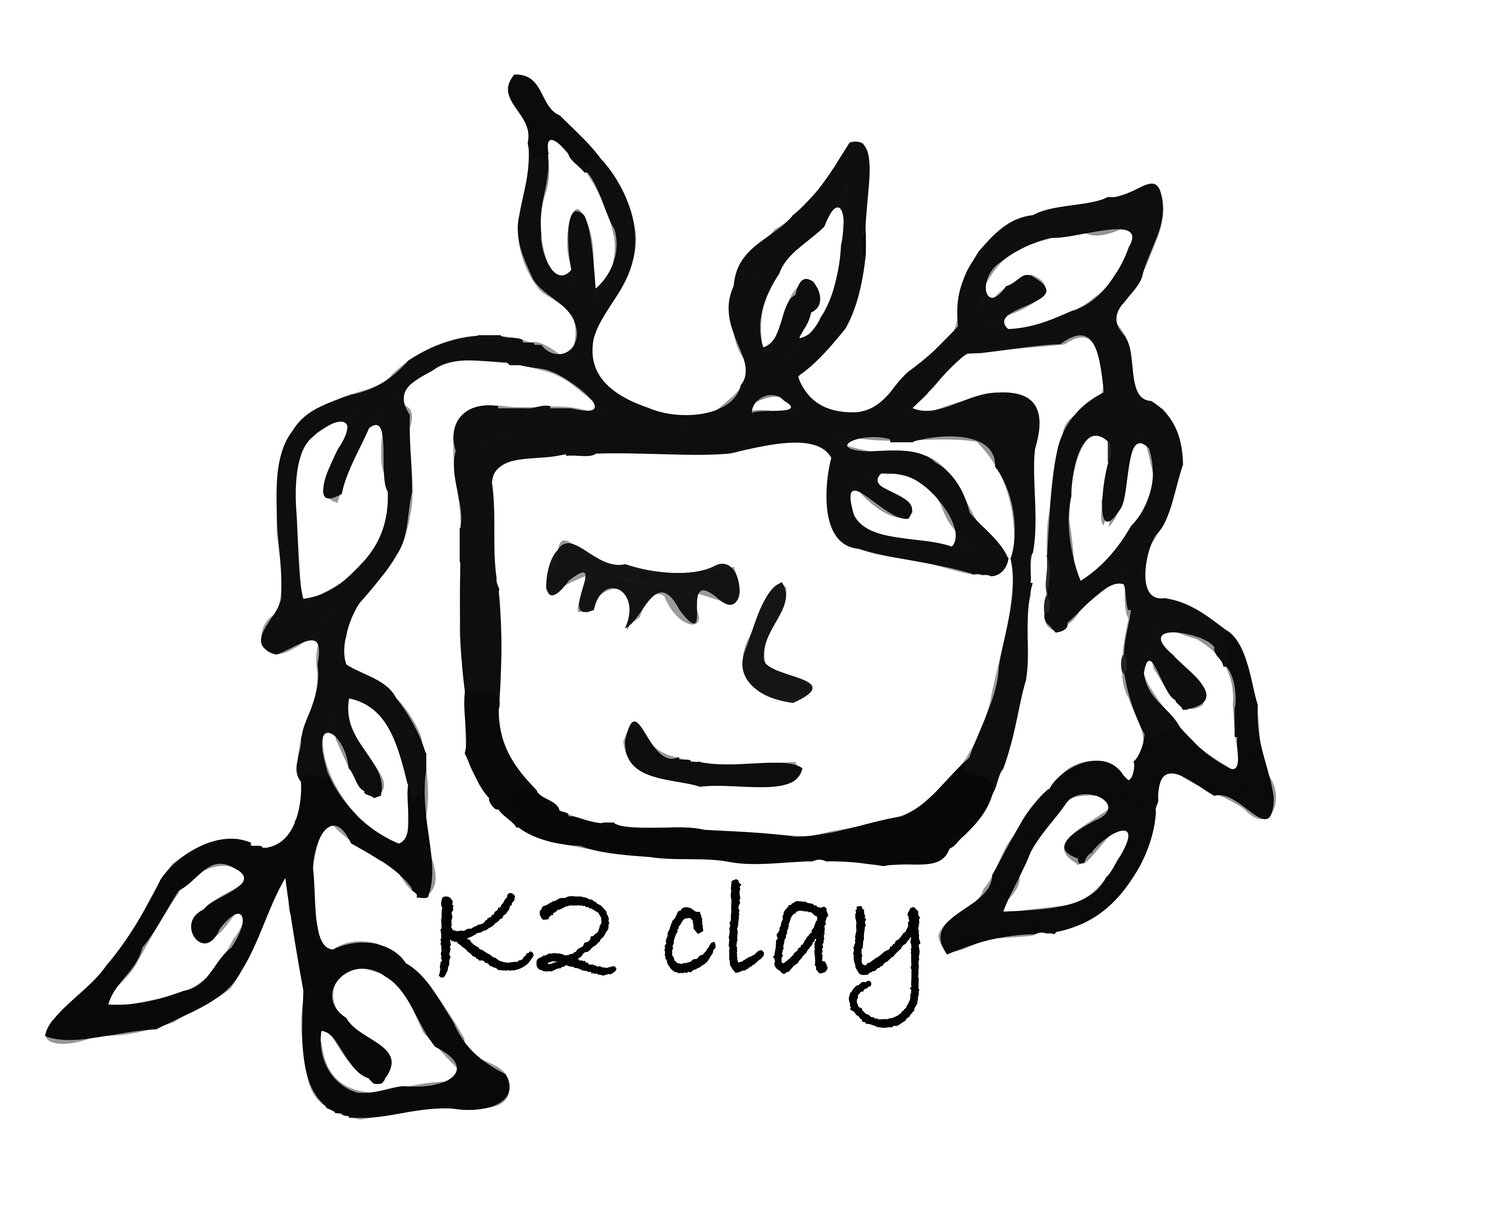 K2 Clay